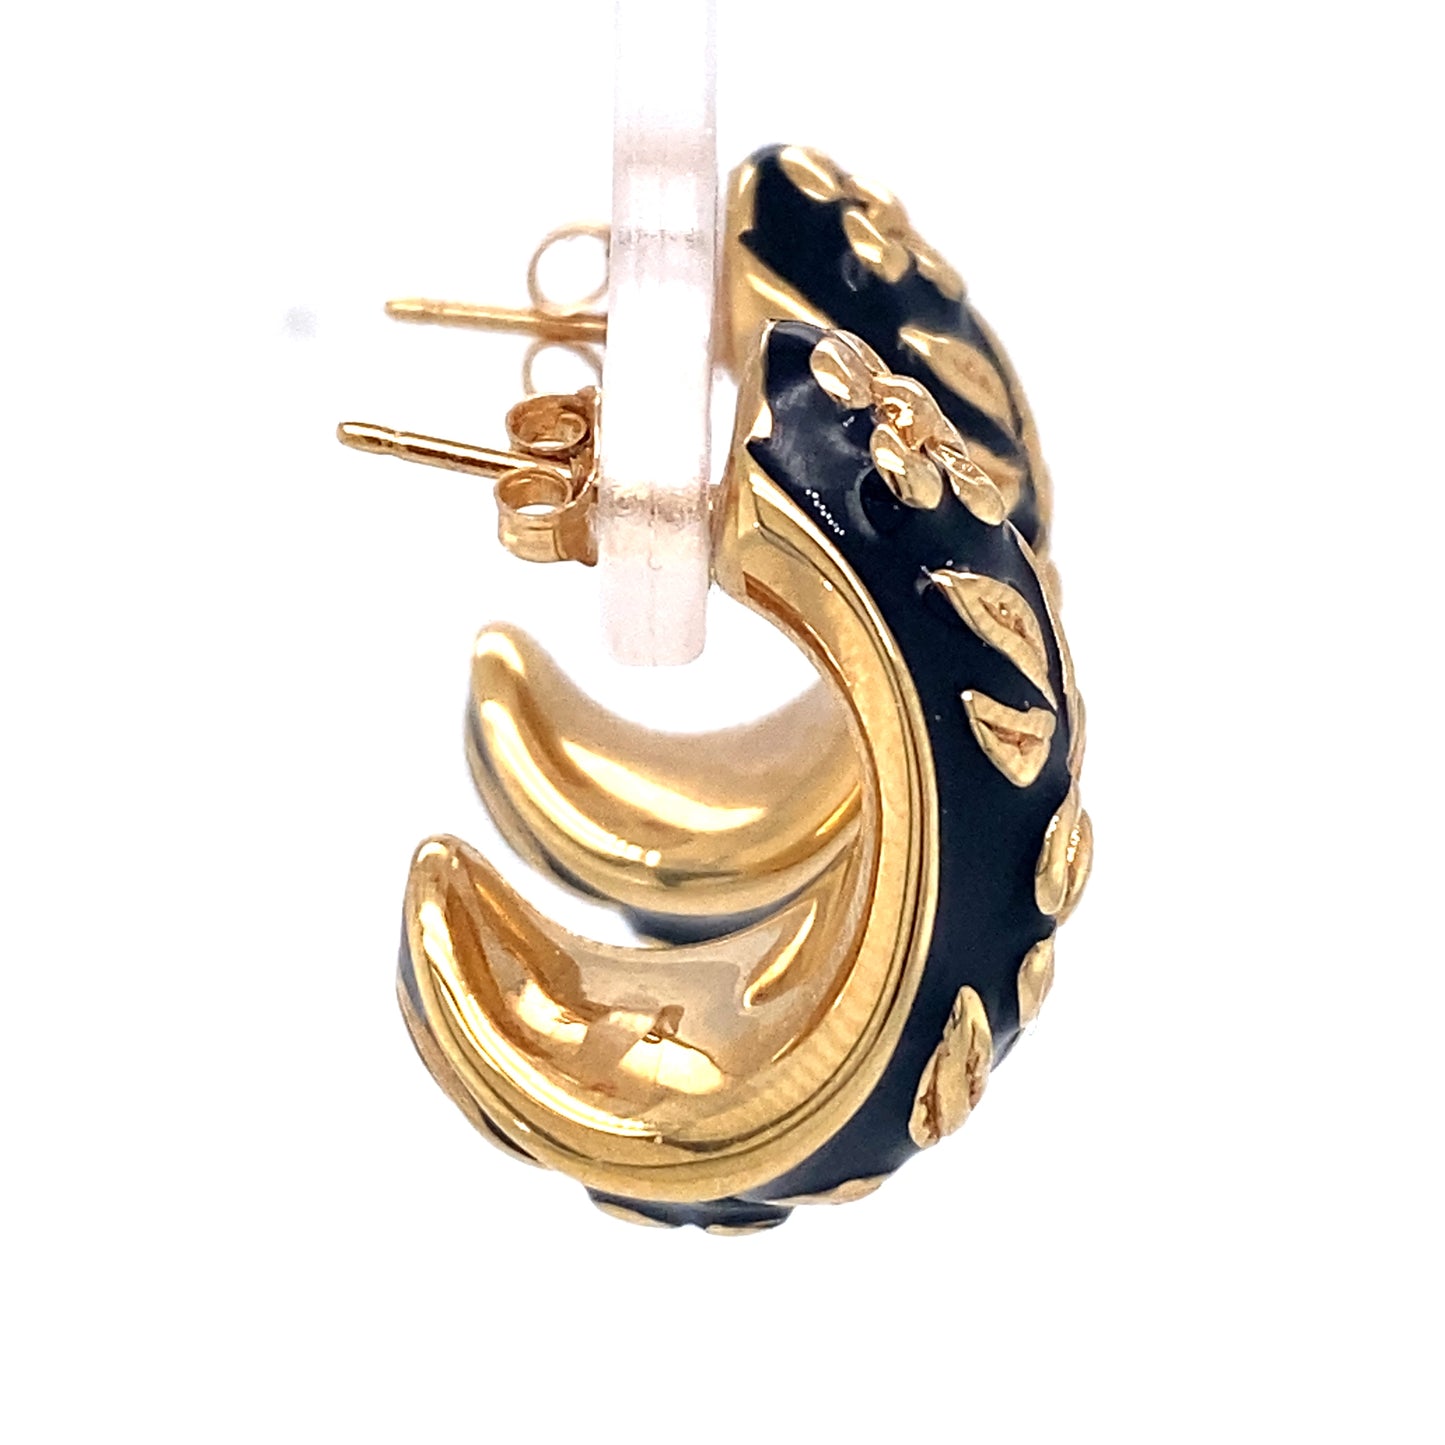 Circa 1960s Black Enamel Floral Motif Half Hoop Earrings in 14K Gold